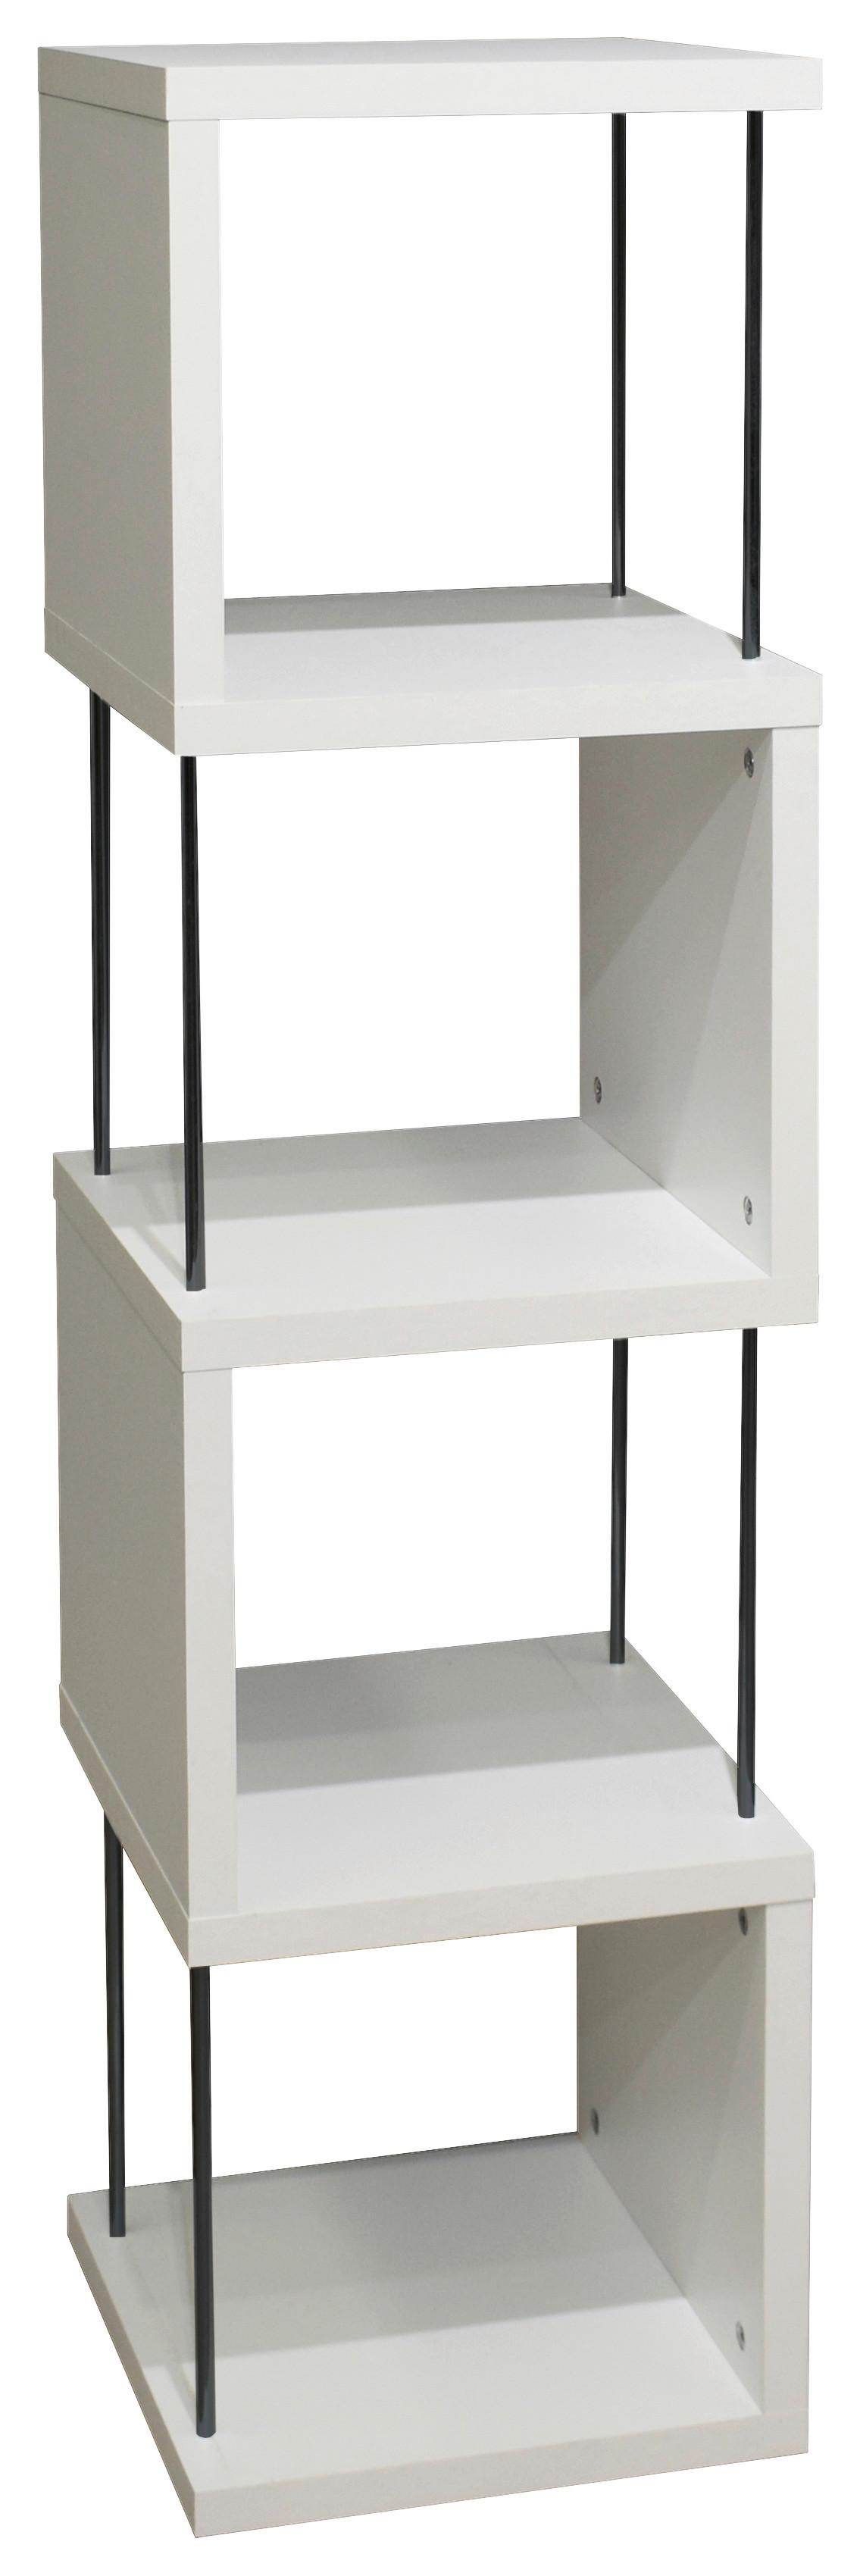 Samostojeći Regal Sticks - bijela/crna, Modern, drvni materijal/plastika (33/126/33cm) - Modern Living